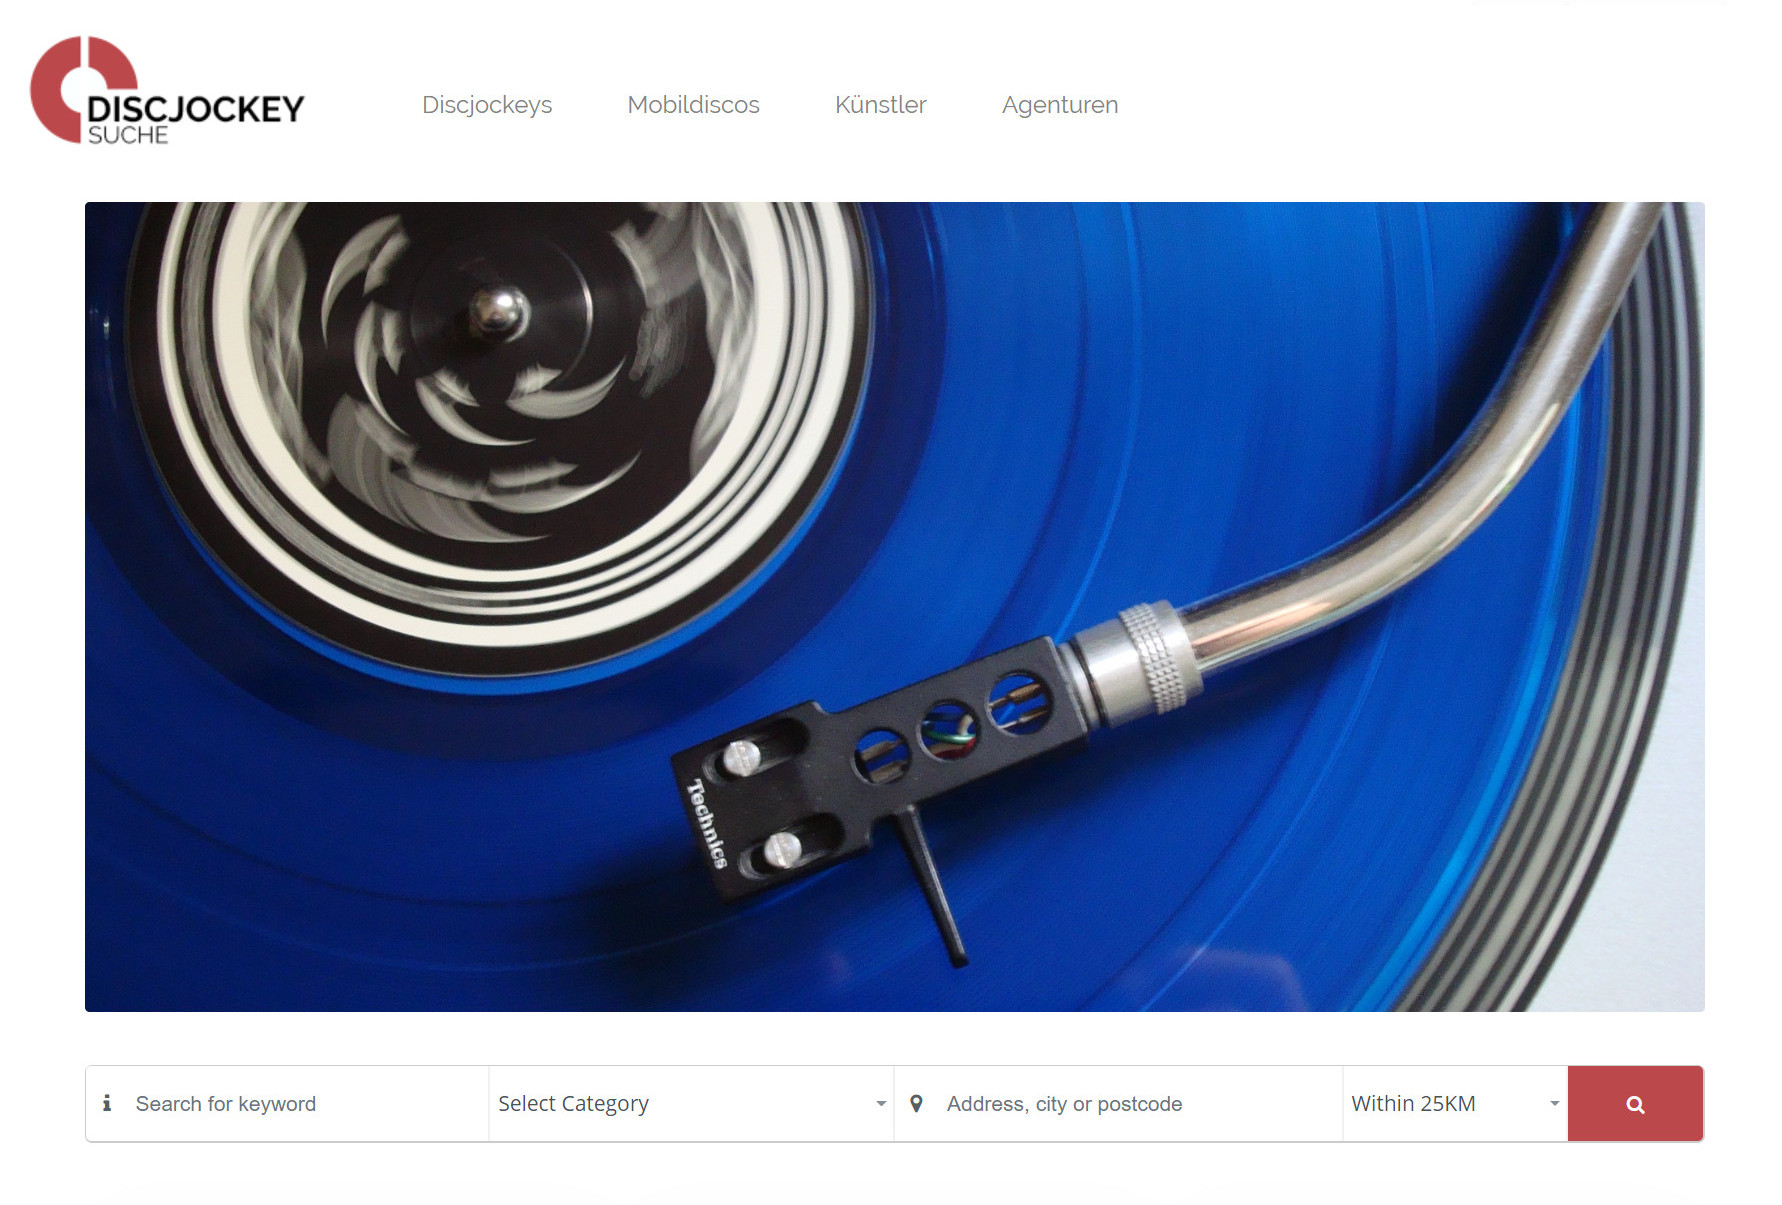 Discjockey-Suche.de - modernes Online-Verzeichnis für DJs, Mobildiscos, Künstler und Agenturen aus Deutschland, Österreich und der Schweiz